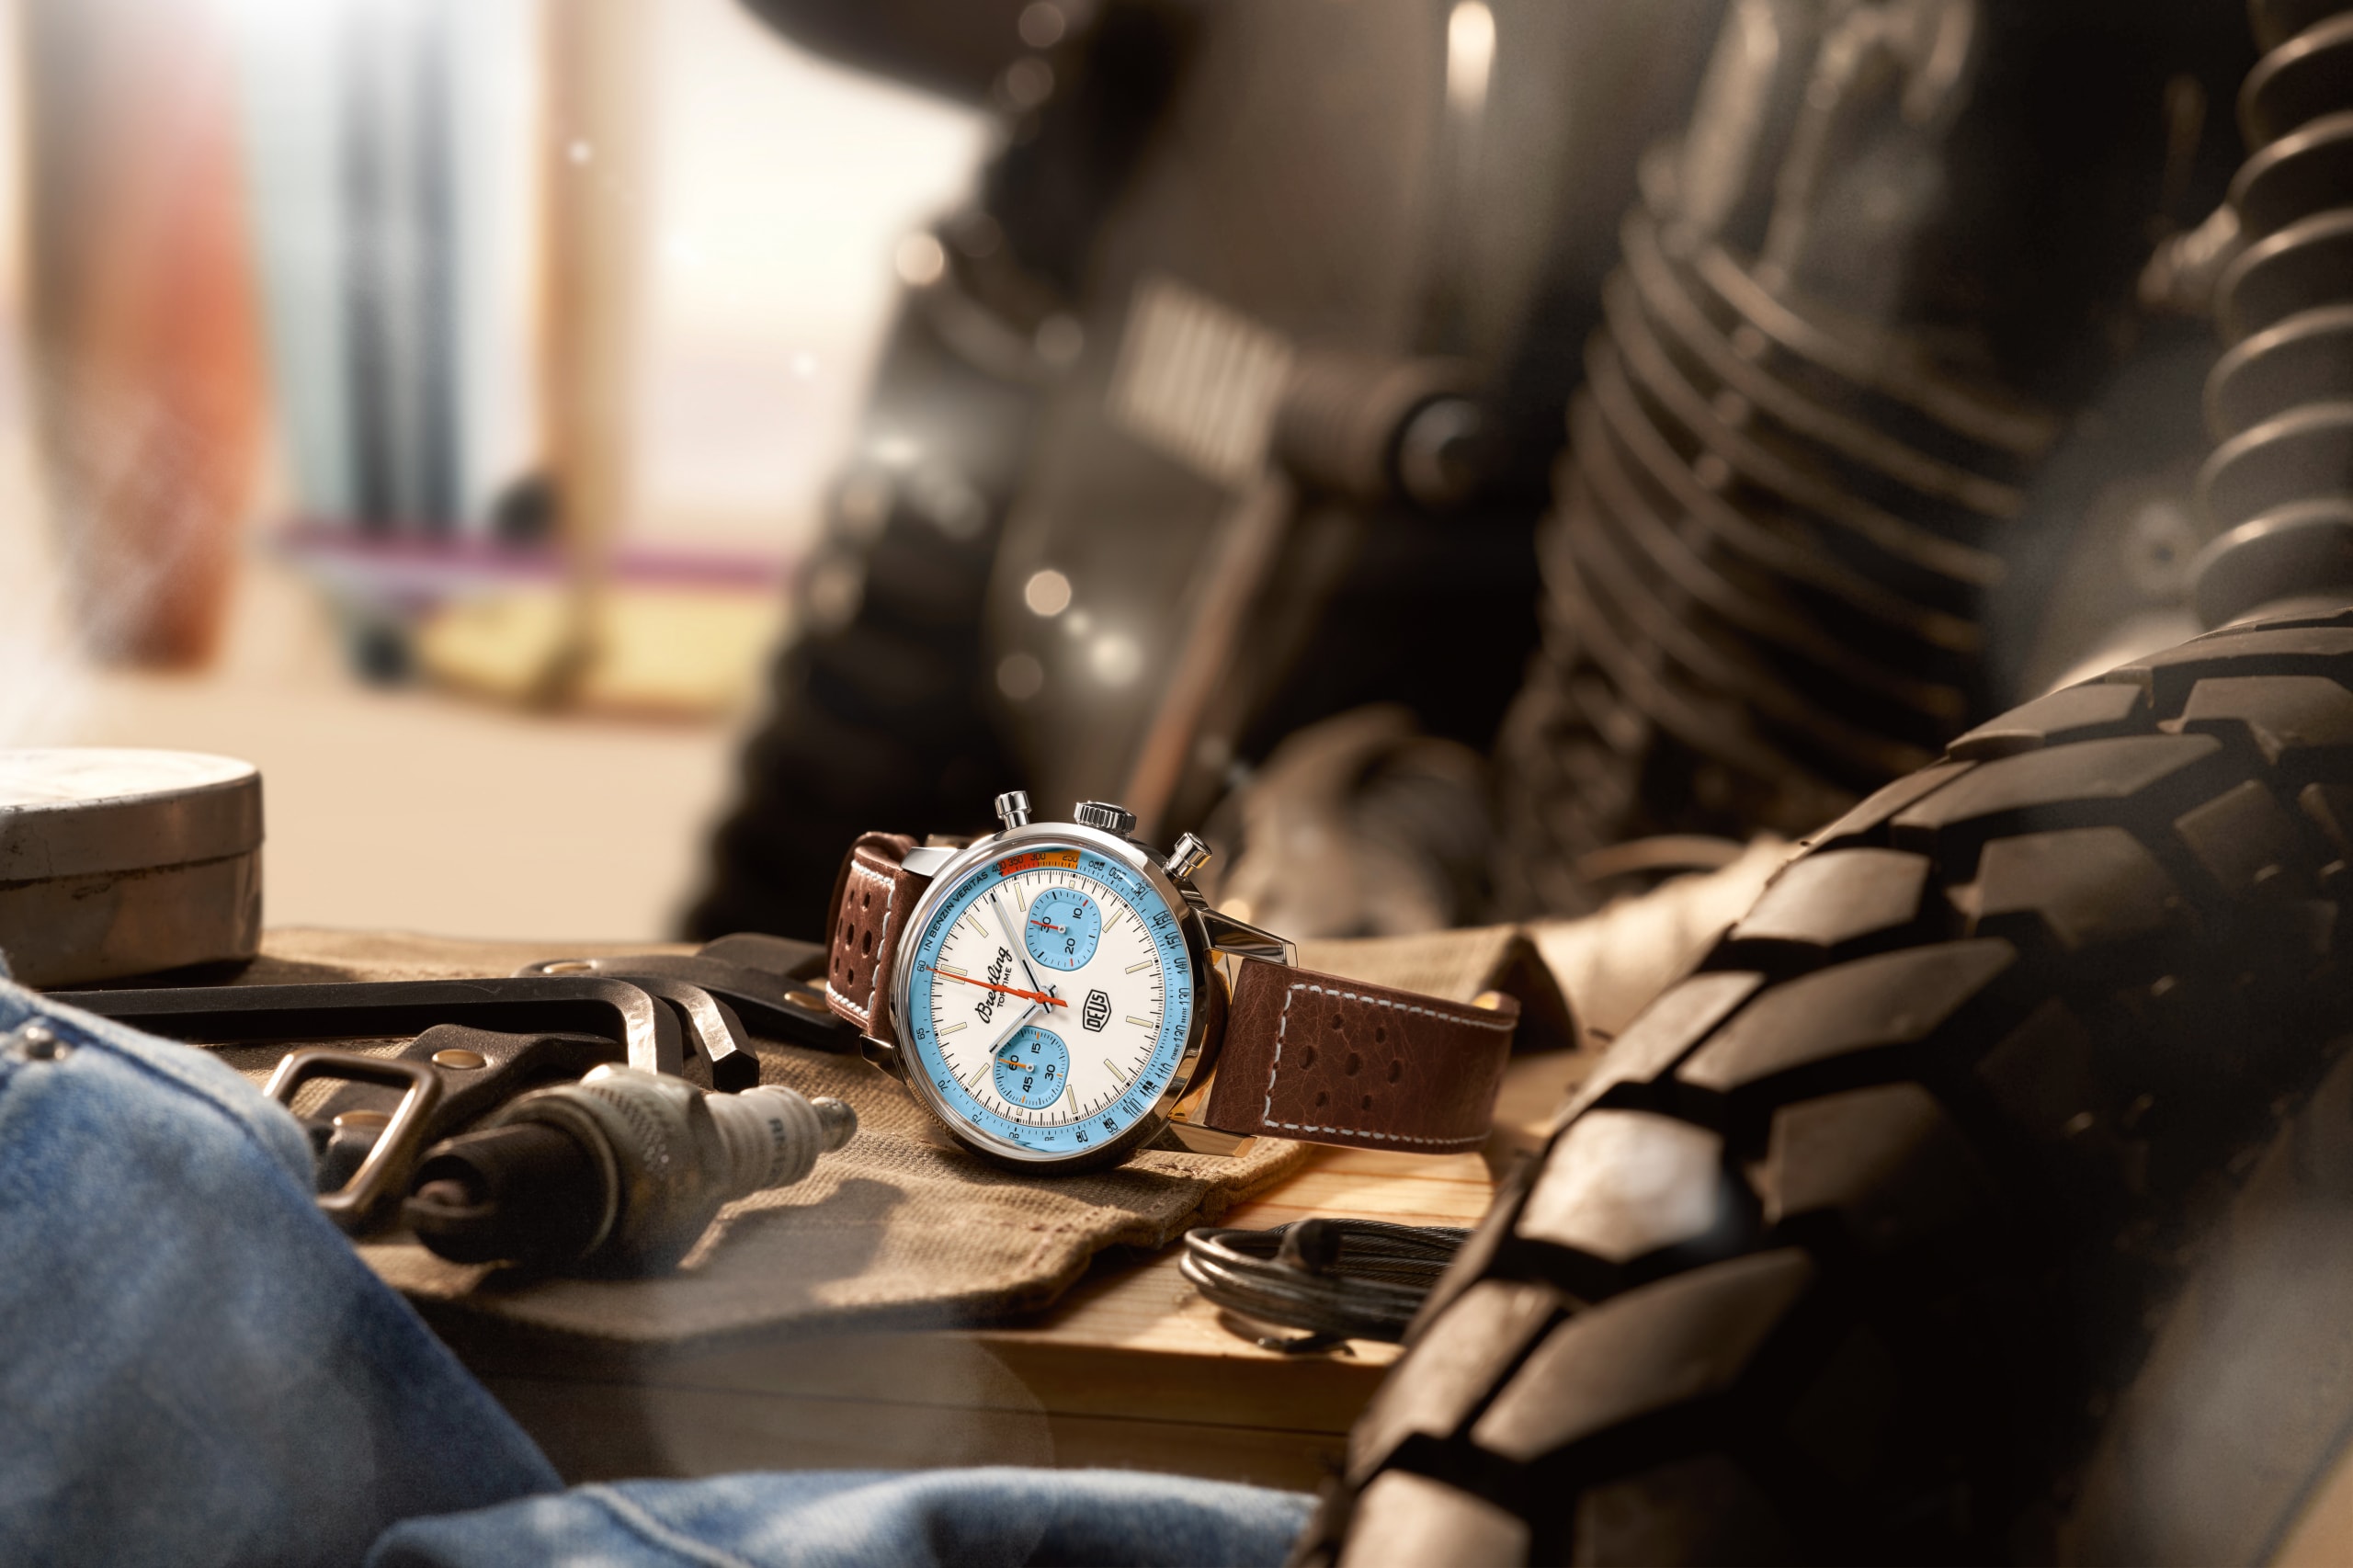 ブライトリングとデウスによるコラボレーション・ウオッチ第2弾が登場 Breitling and Deus launch second collaborative watch top time